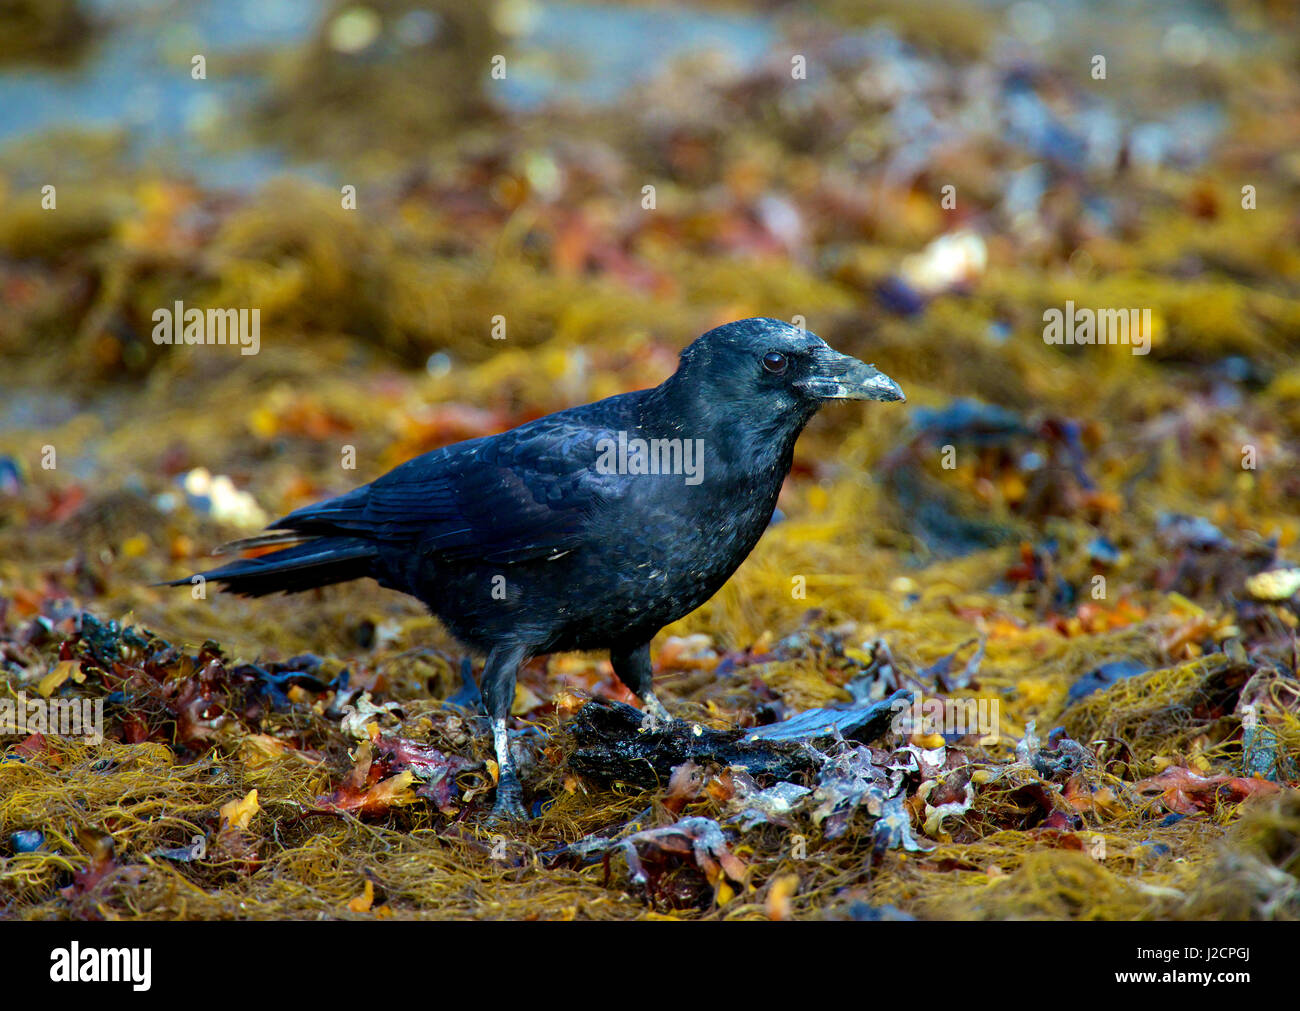 Nordwestliche Krähe (Corvus Caurinus) ist ein All-schwarze passerine Vogel  der Gattung Krähe in Nordamerika beheimatet. Bezeichnet die Fisch Krähe ist  es kleiner als die gemeinsame Krähe und Rabe mit mehr nasale Stimme. (